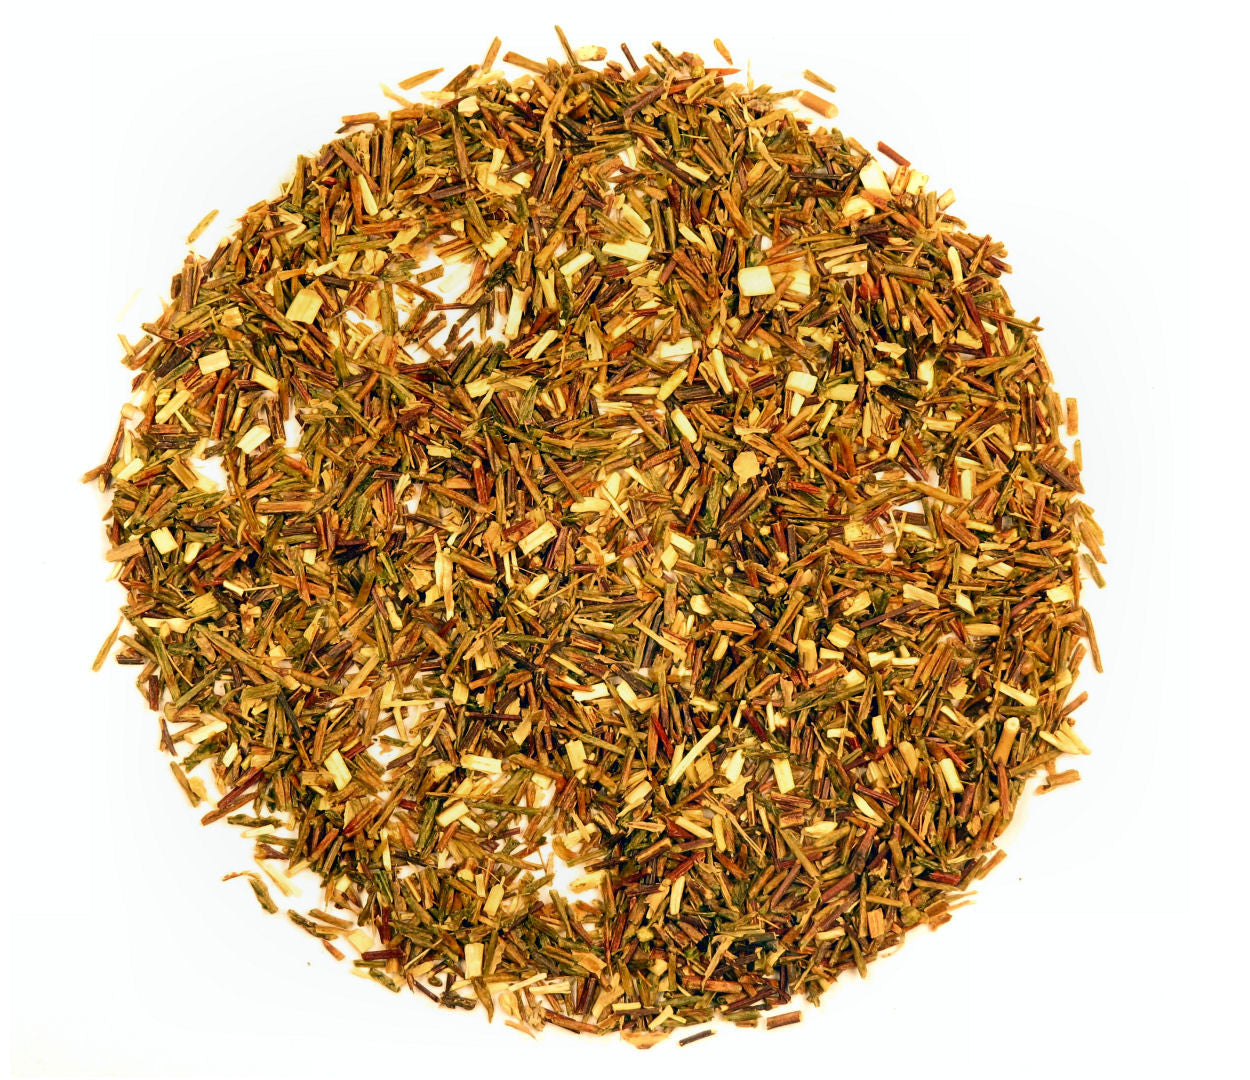 Green Rooibos herbal tea